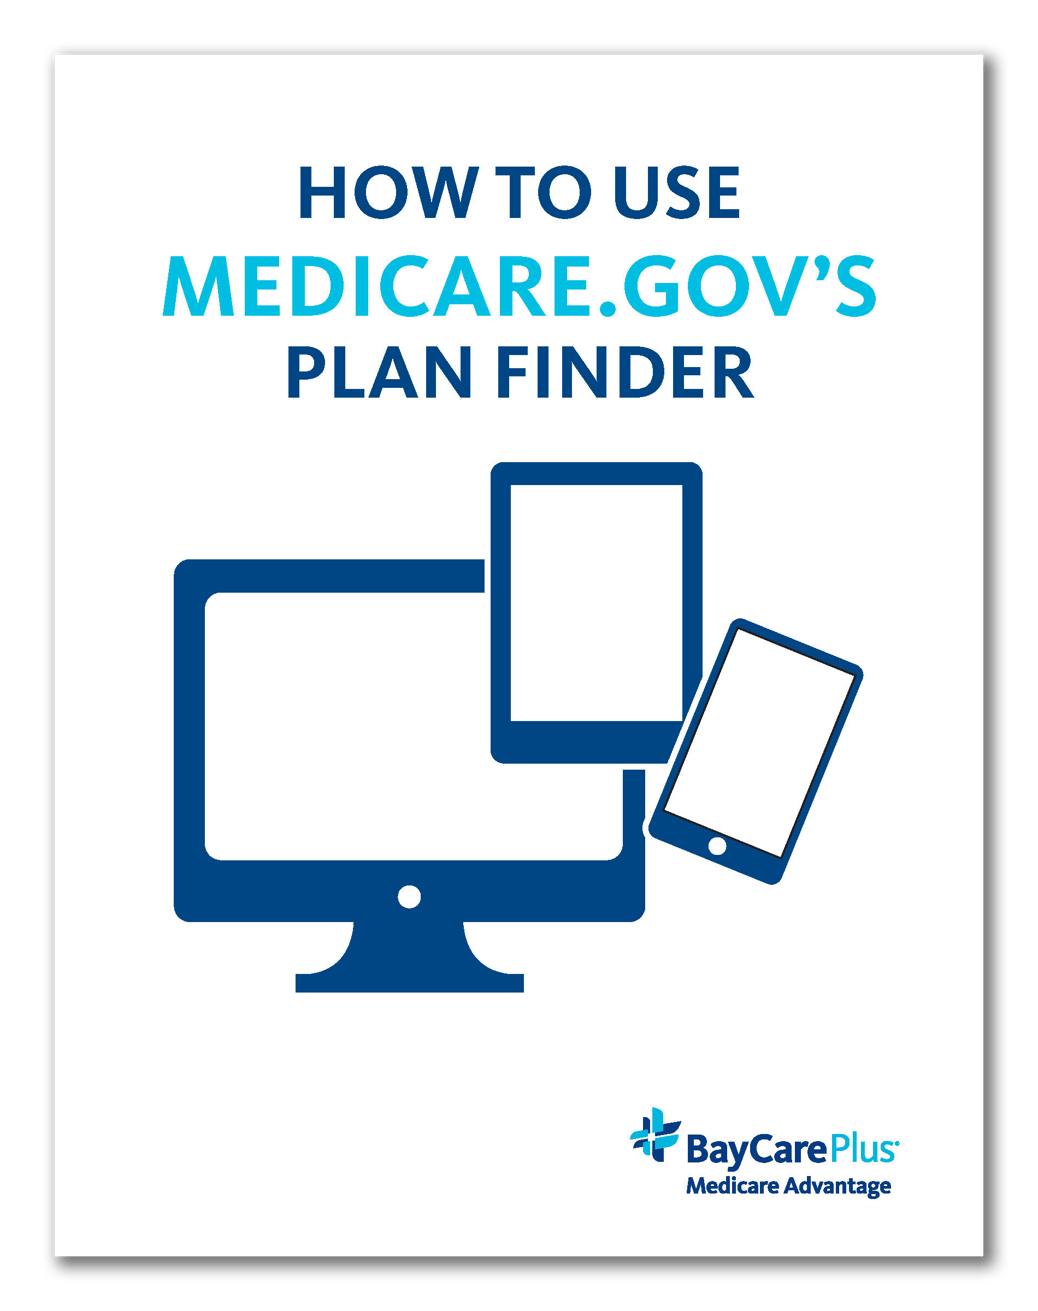 How to Use Medicare.gov's Plan Finder